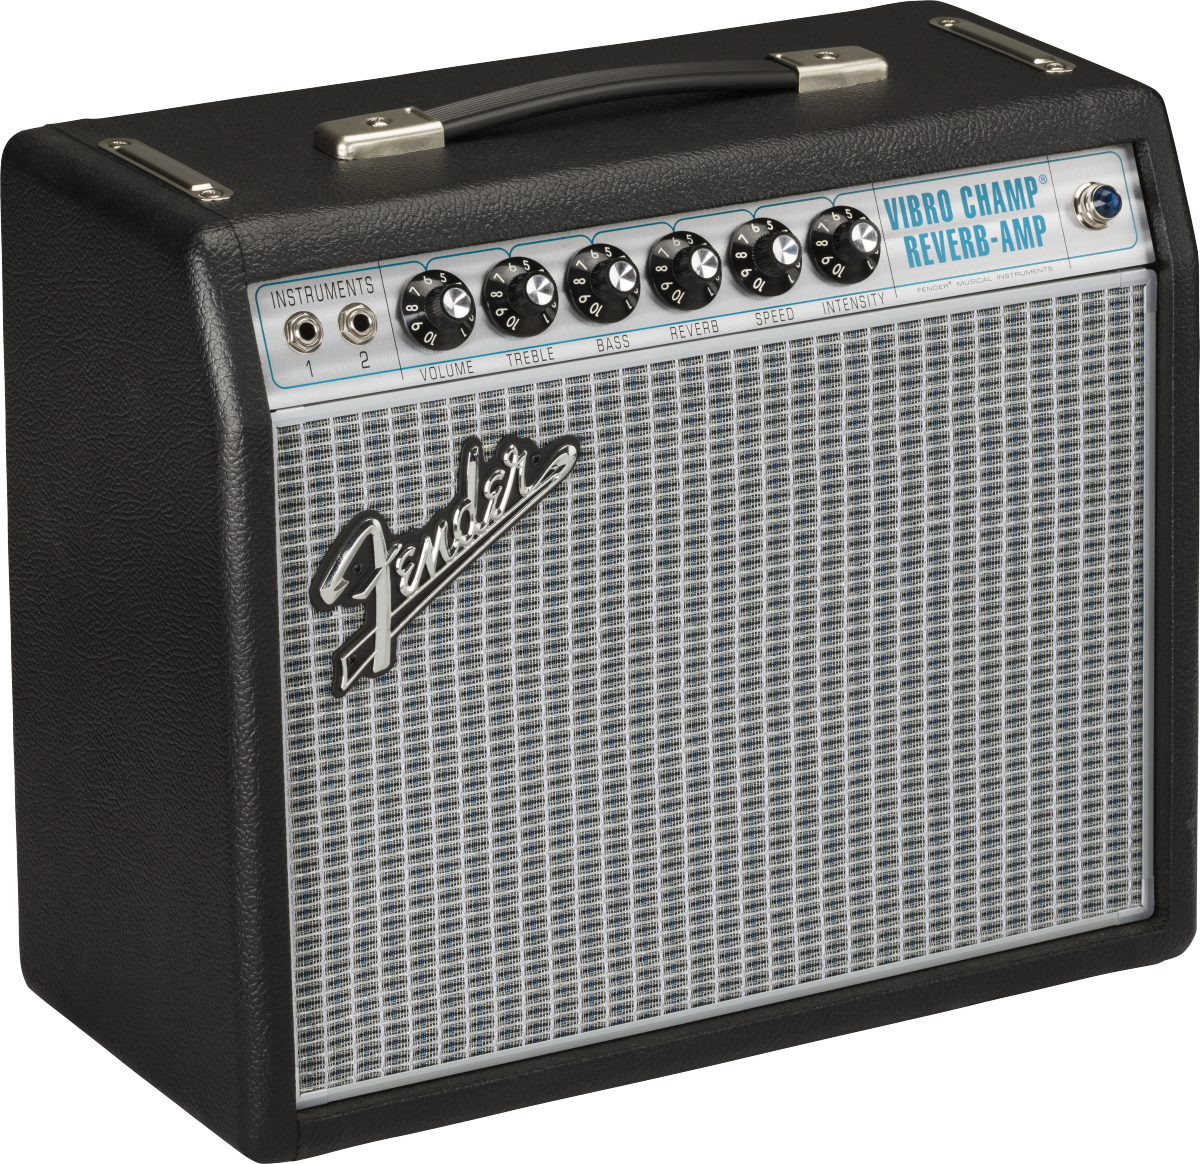 Fender ’68 Custom Vibro Champ Reverb Amp